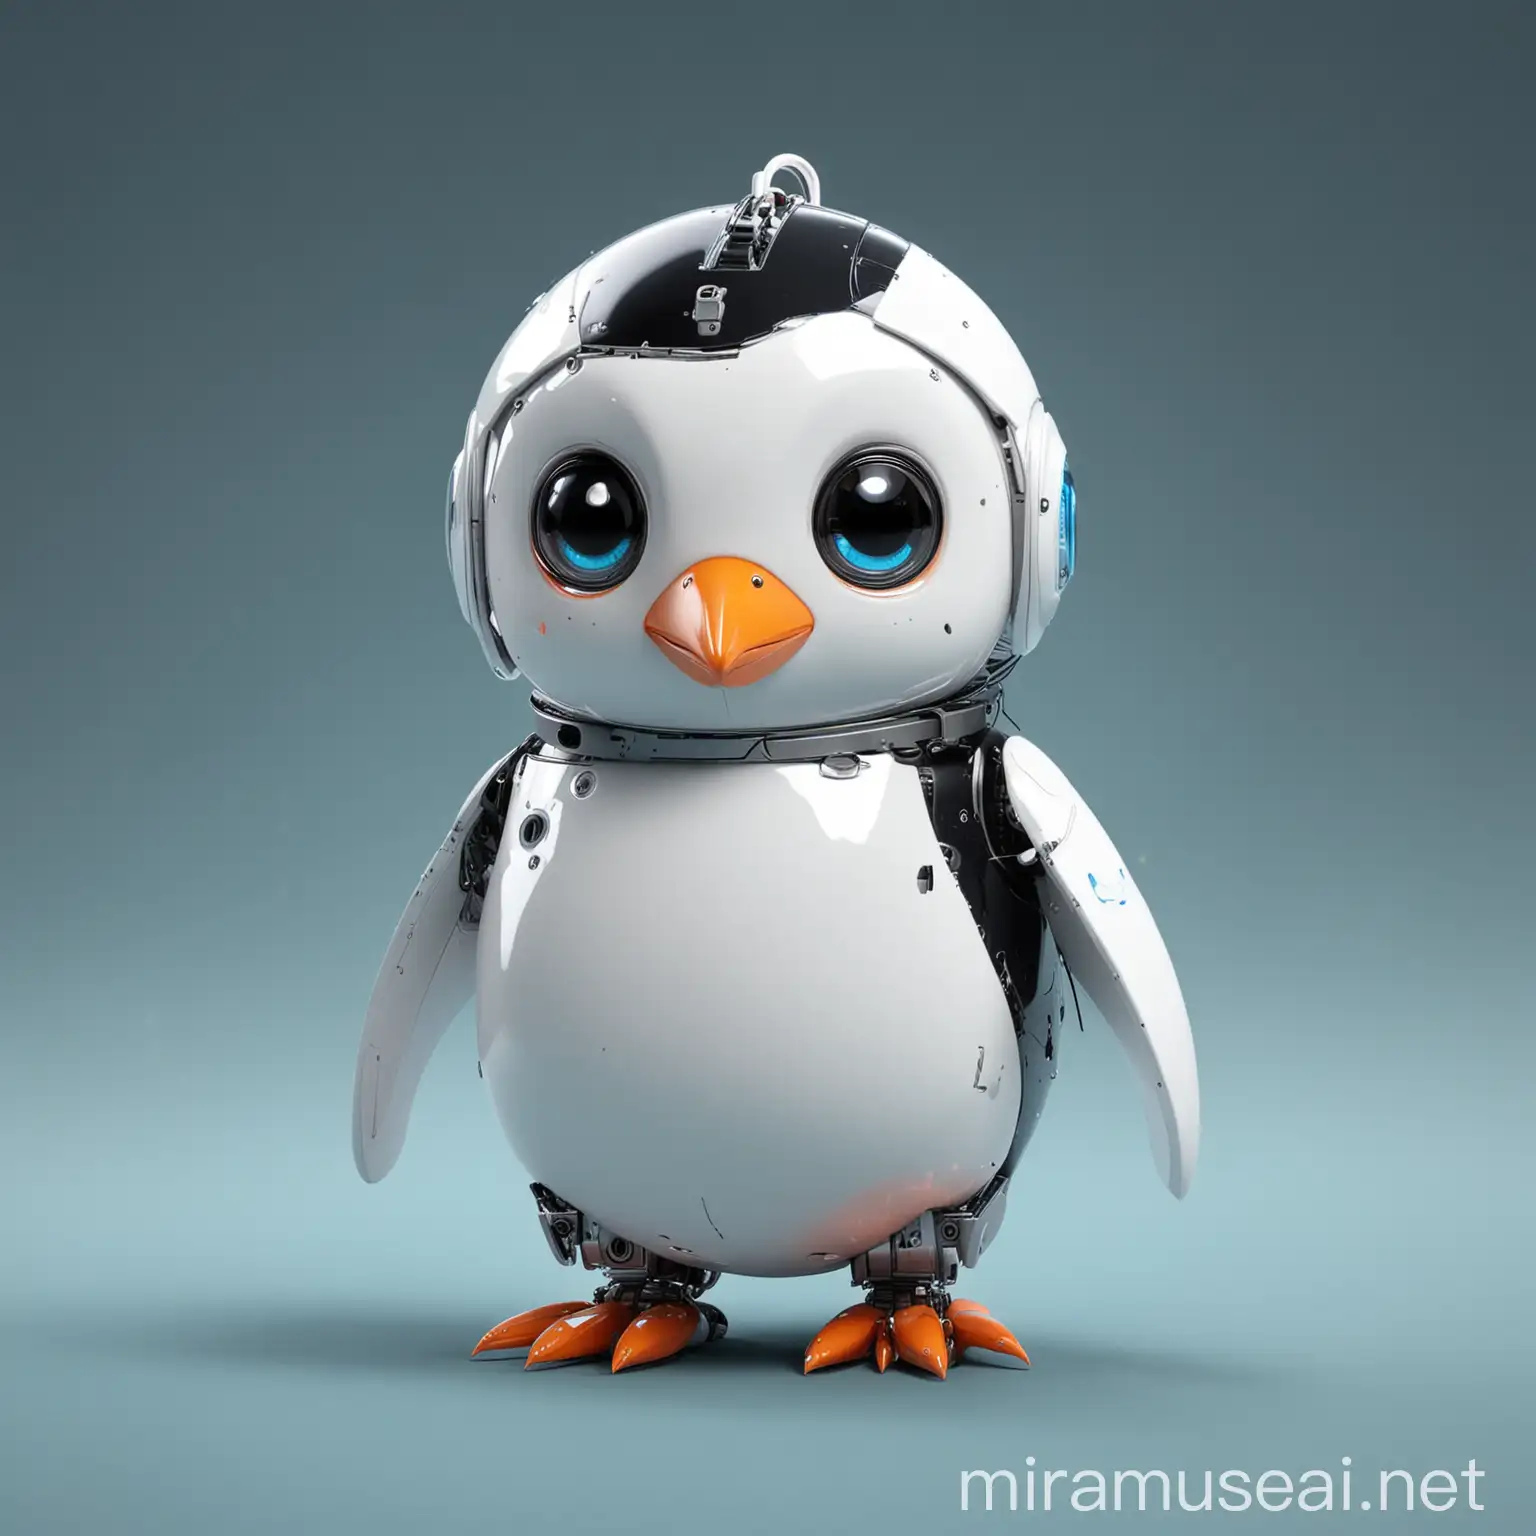 Cute robotic penguin